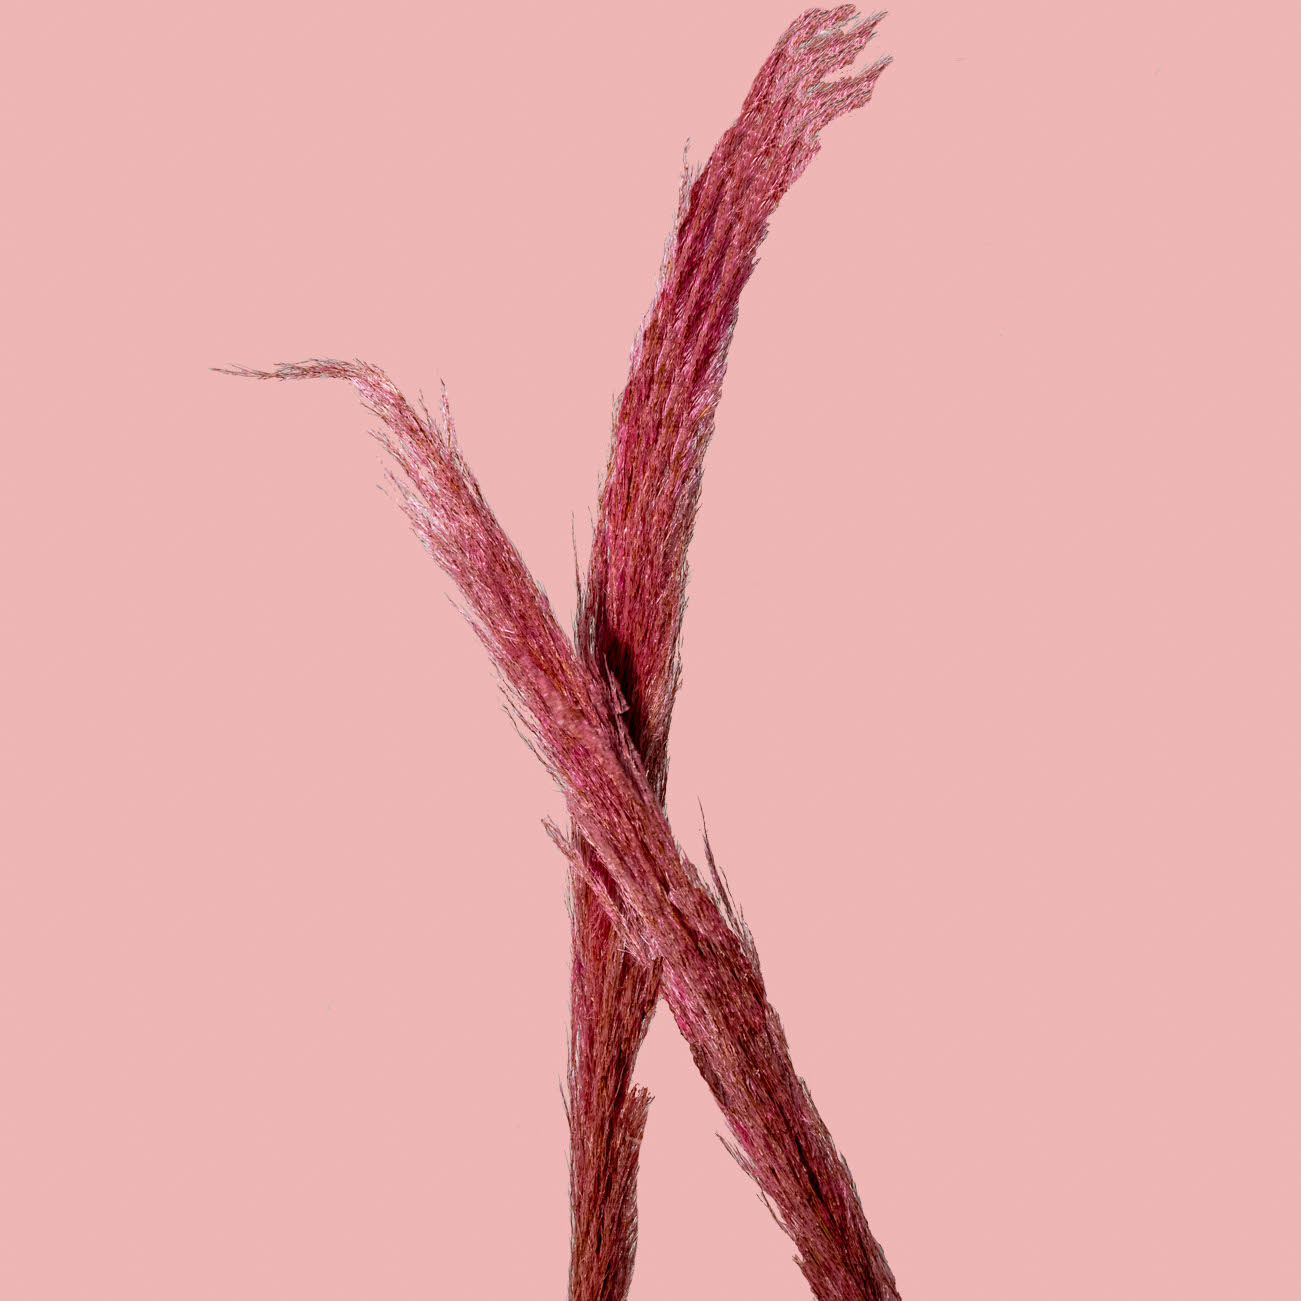 Pink Pampas Grass